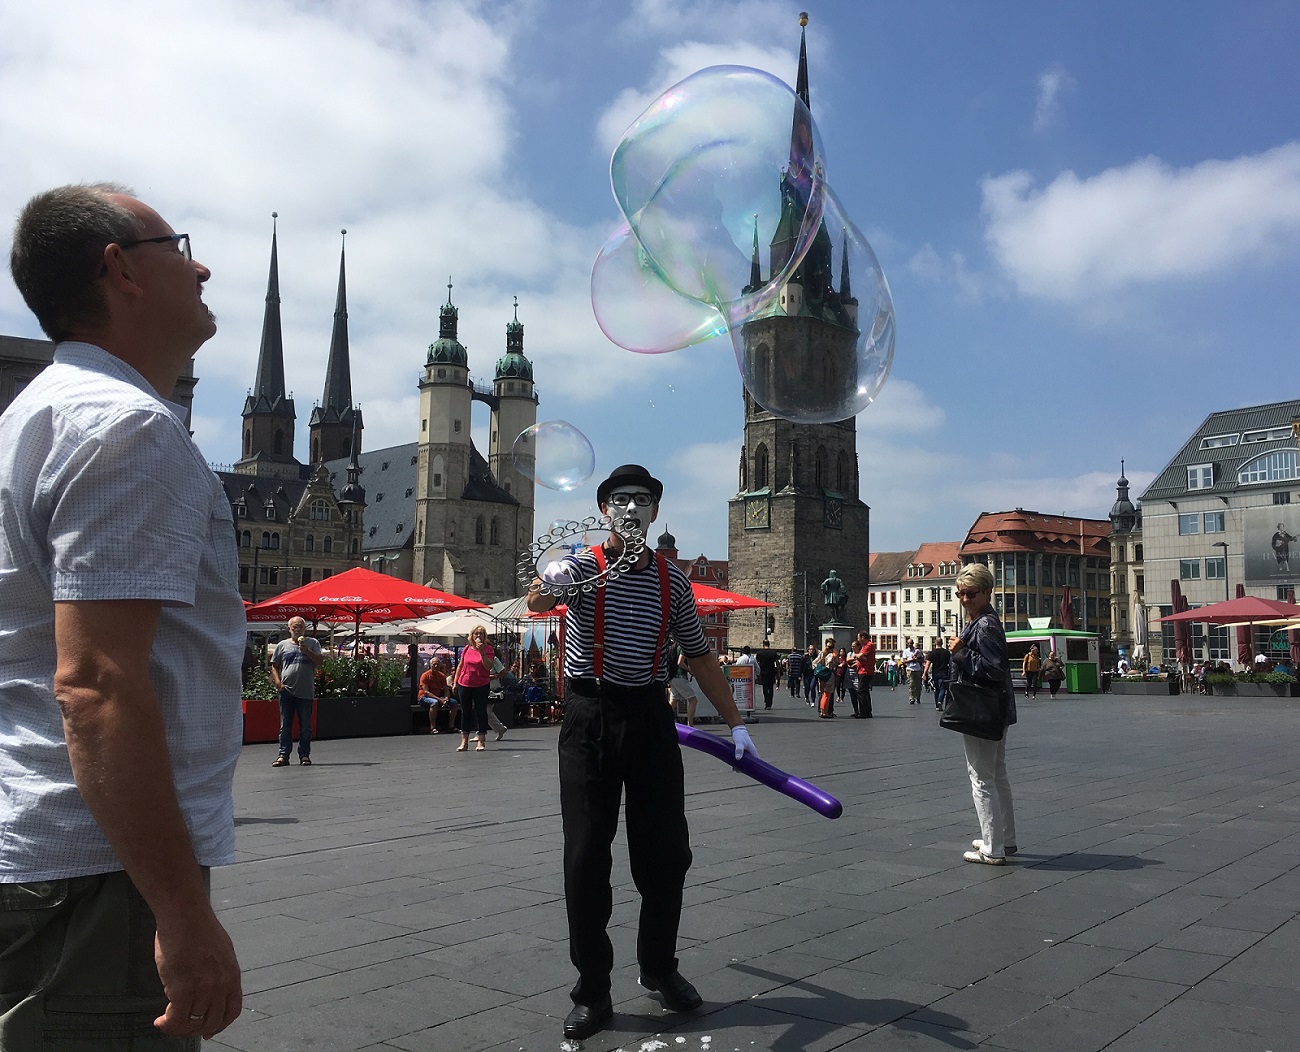 mime artist making soap bubbles